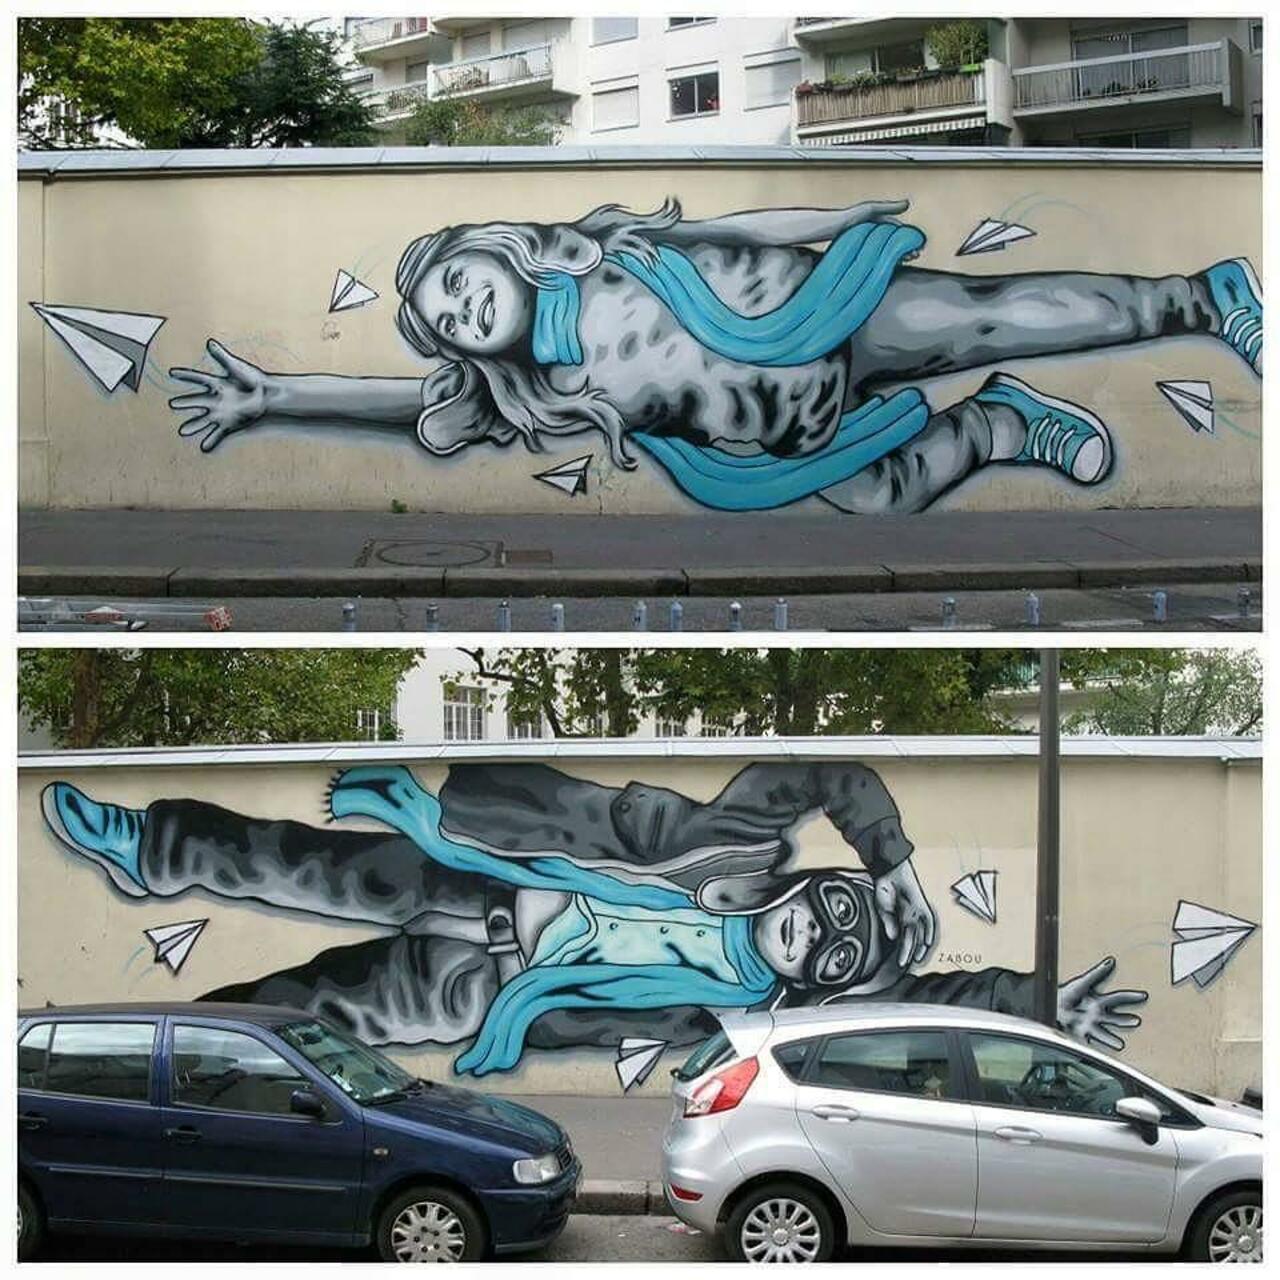 #Paris #graffiti photo by @streetartparischris http://ift.tt/1Mh09UA #StreetArt http://t.co/NOtudD5ASF